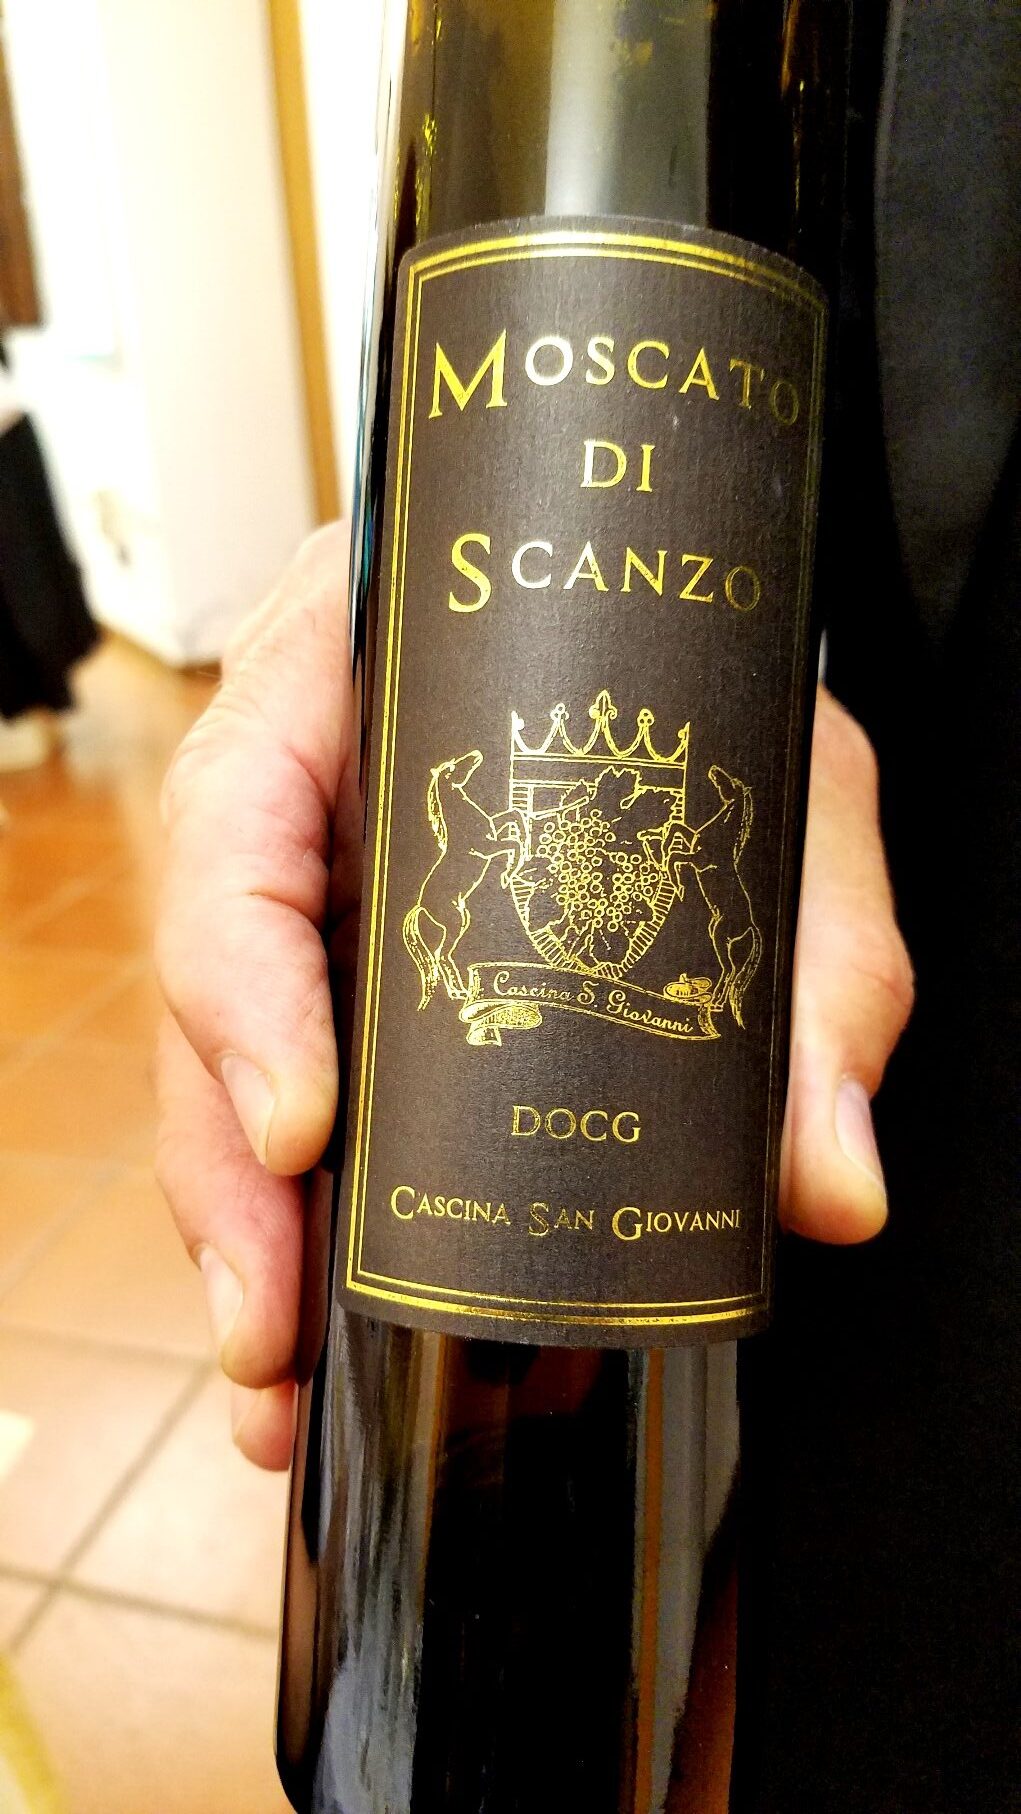 Cascina San Giovanni, Moscato di Scanzo DOCG 2017, Lombardy, Italy, Wine Casual